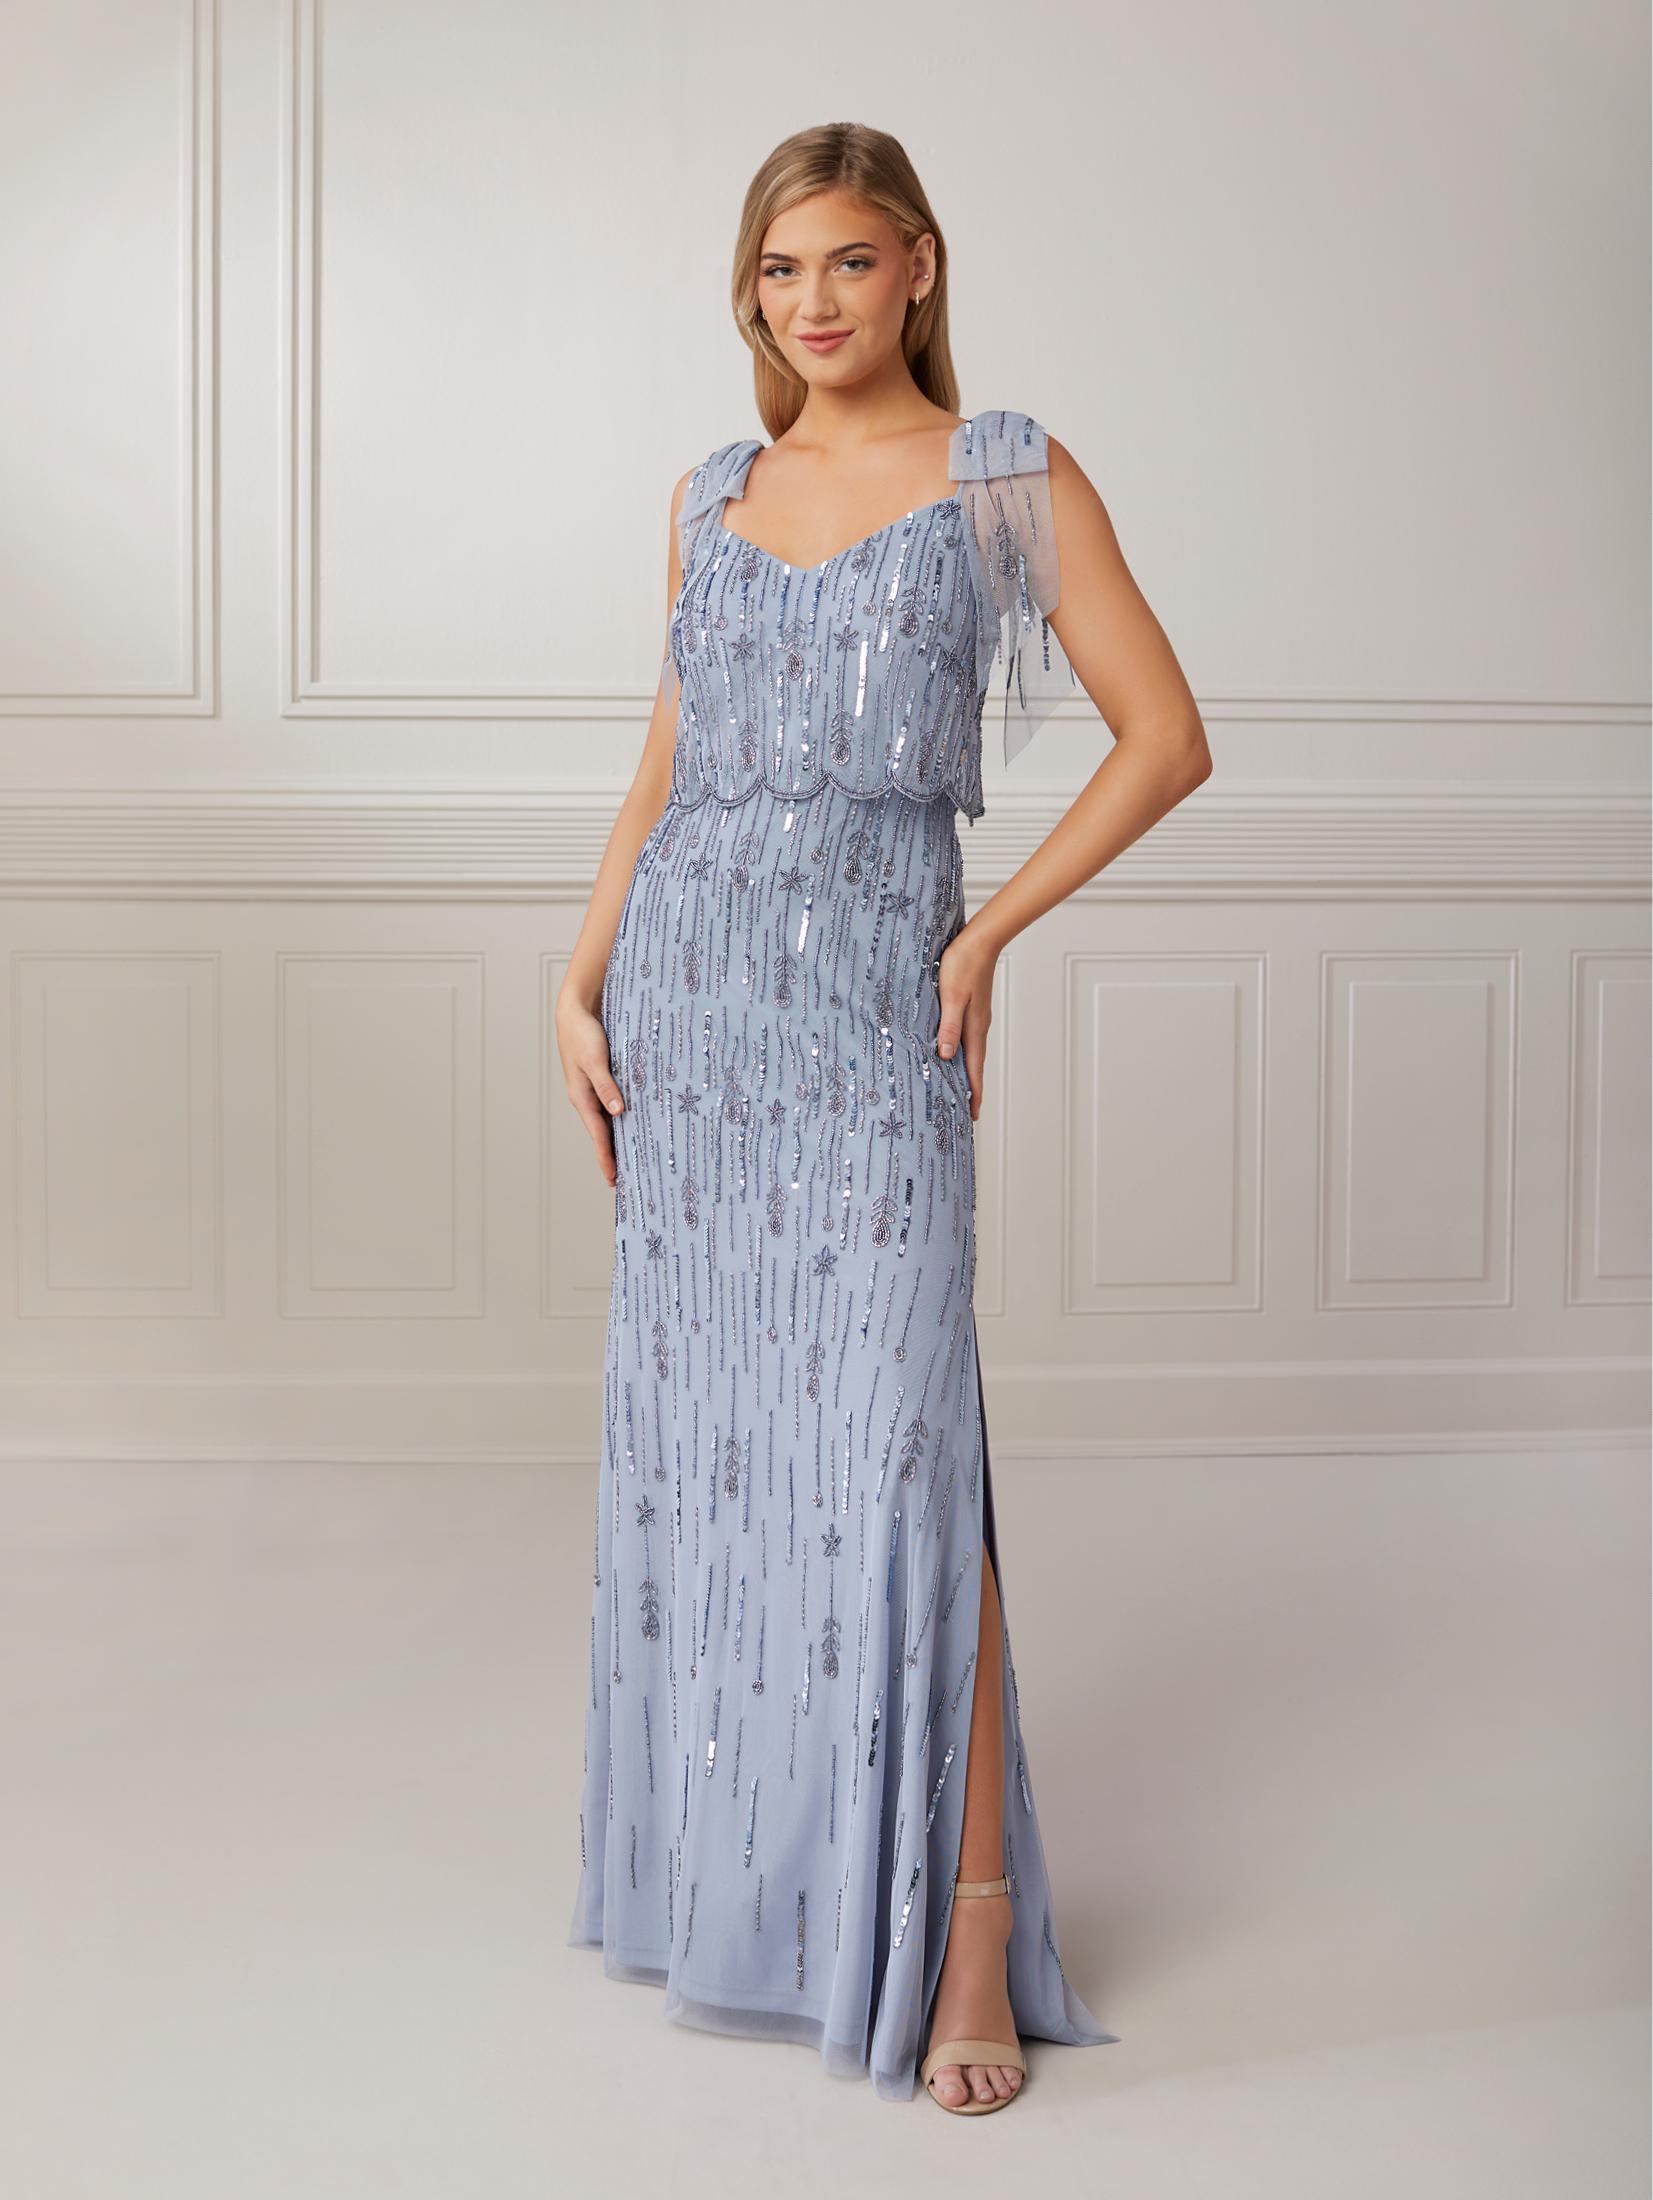 platinum: Women's Formal Dresses & Evening Gowns | Dillard's